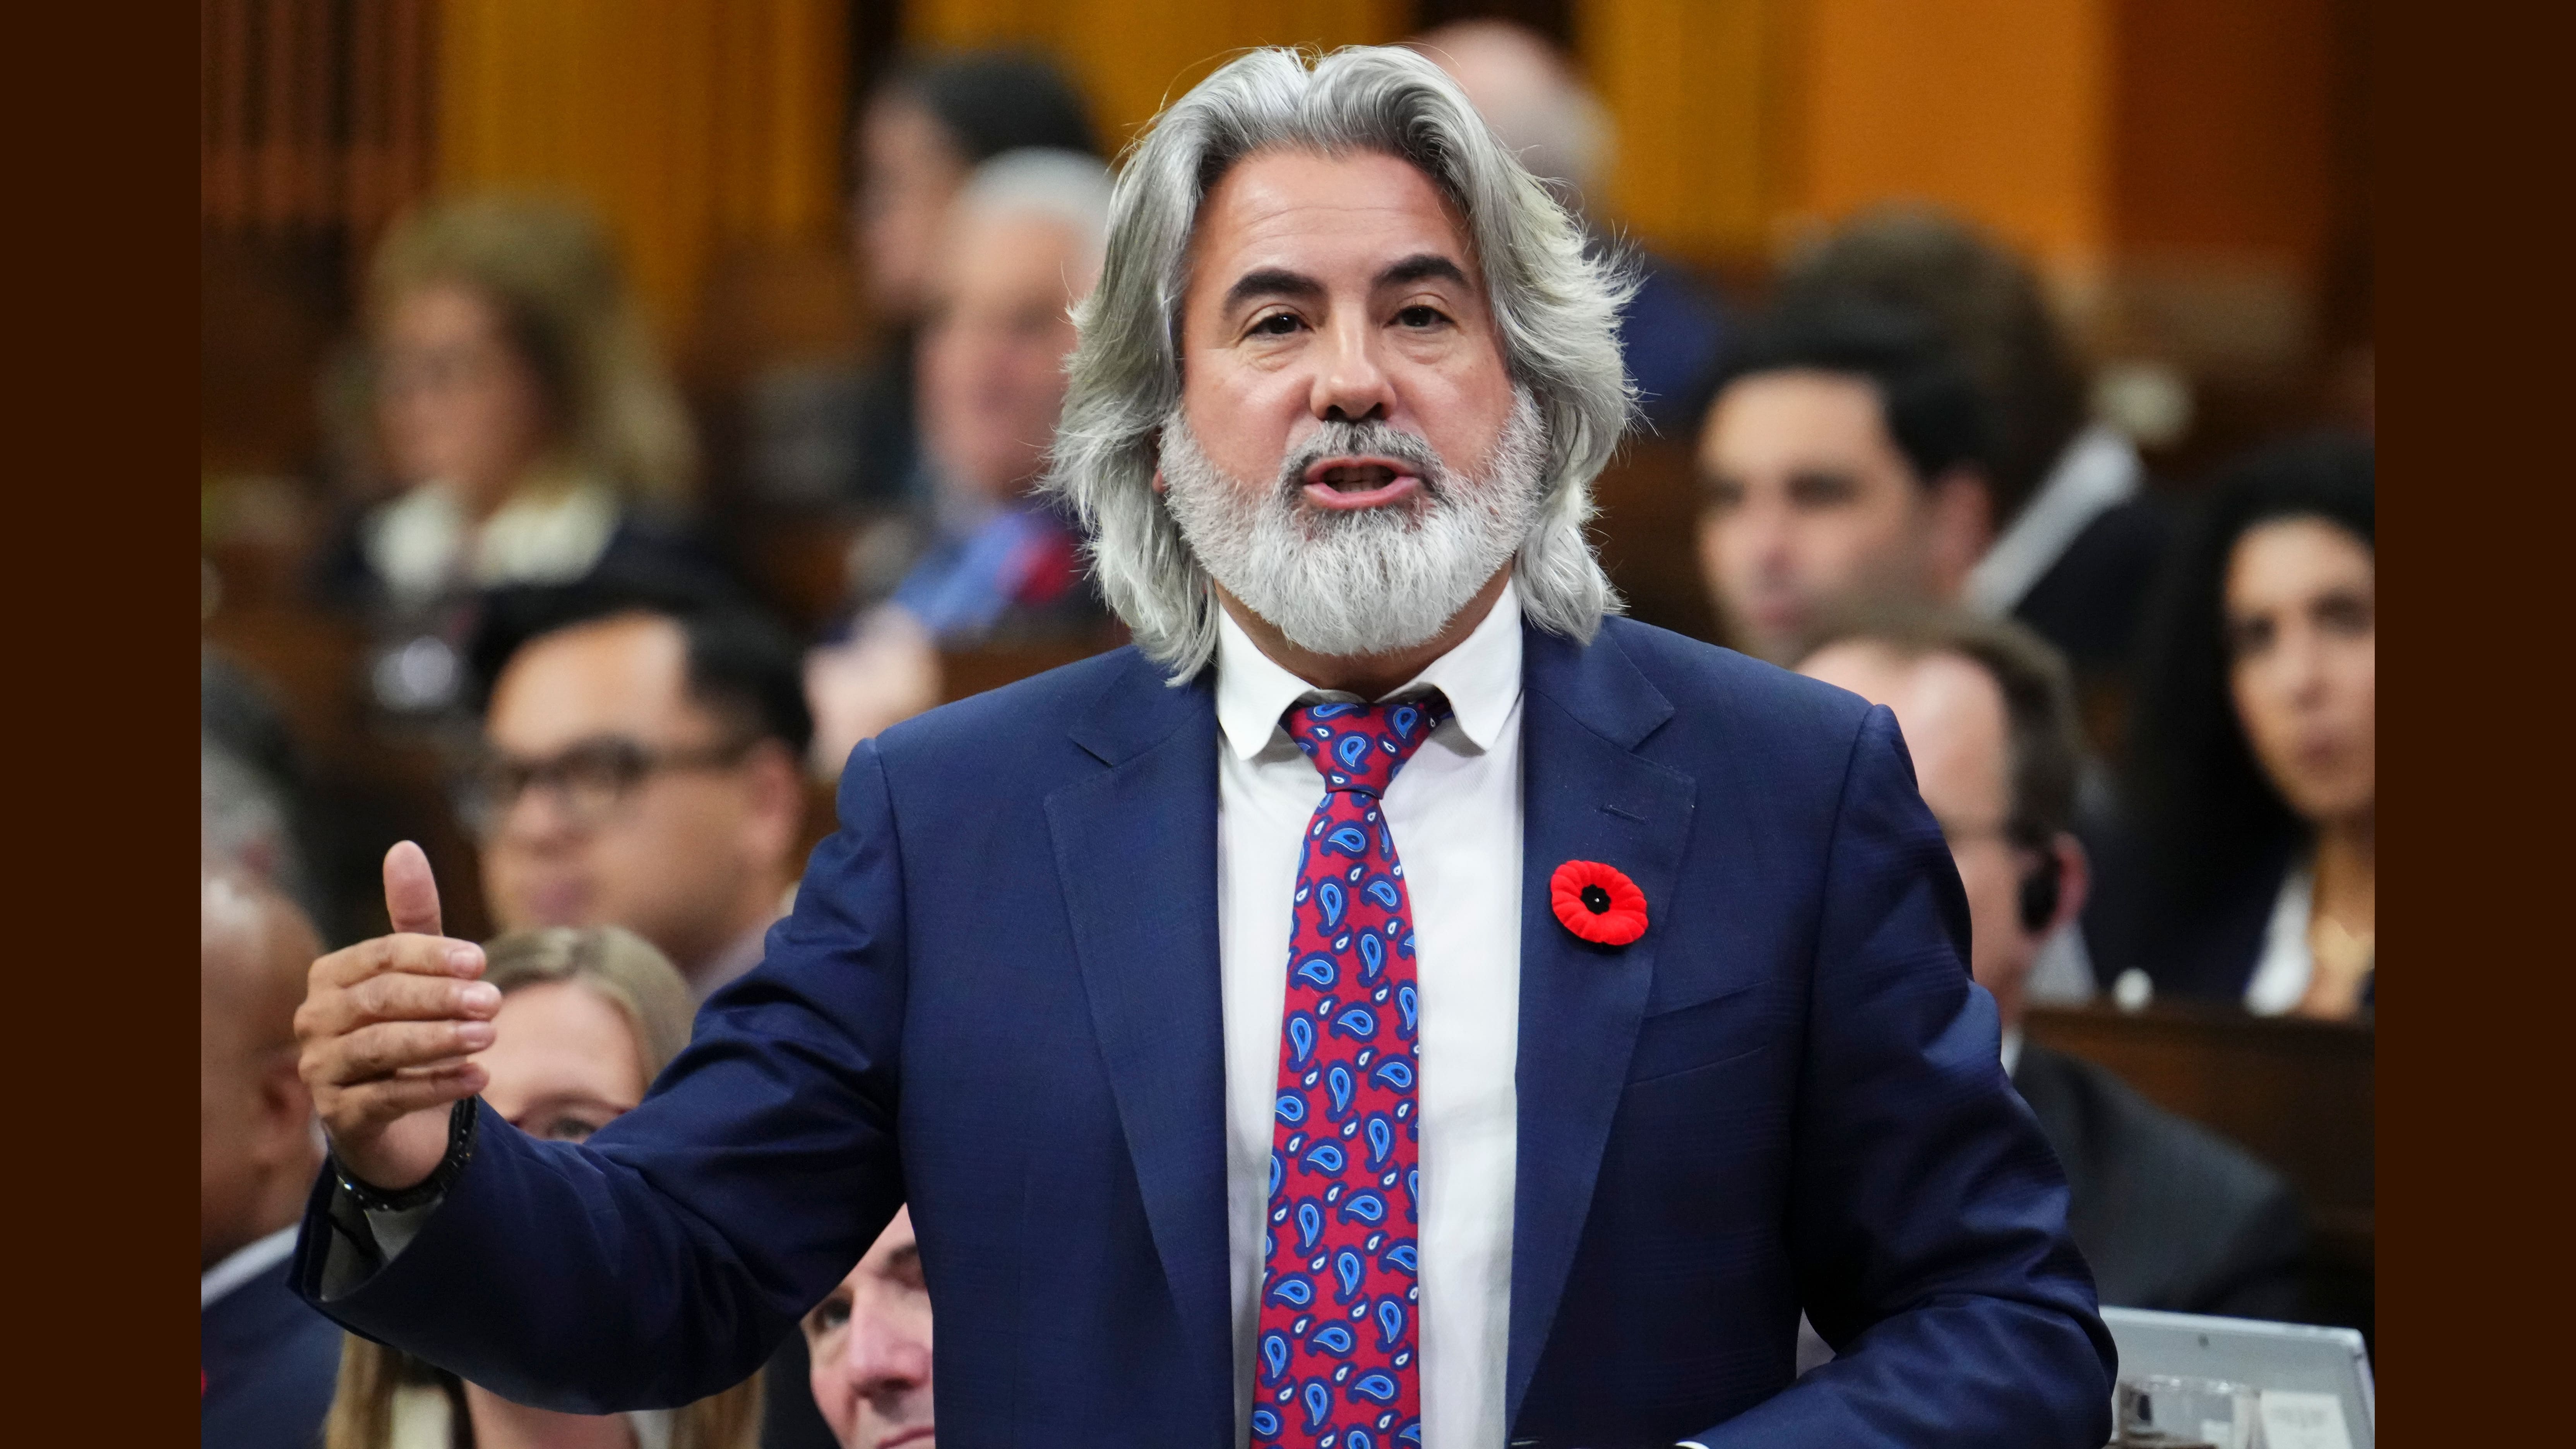 Tous les Canadiens devraient s'inquiéter de la montée des conservateurs au pays, selon le ministre des Transports et lieutenant du Québec, Pablo Rodriguez.